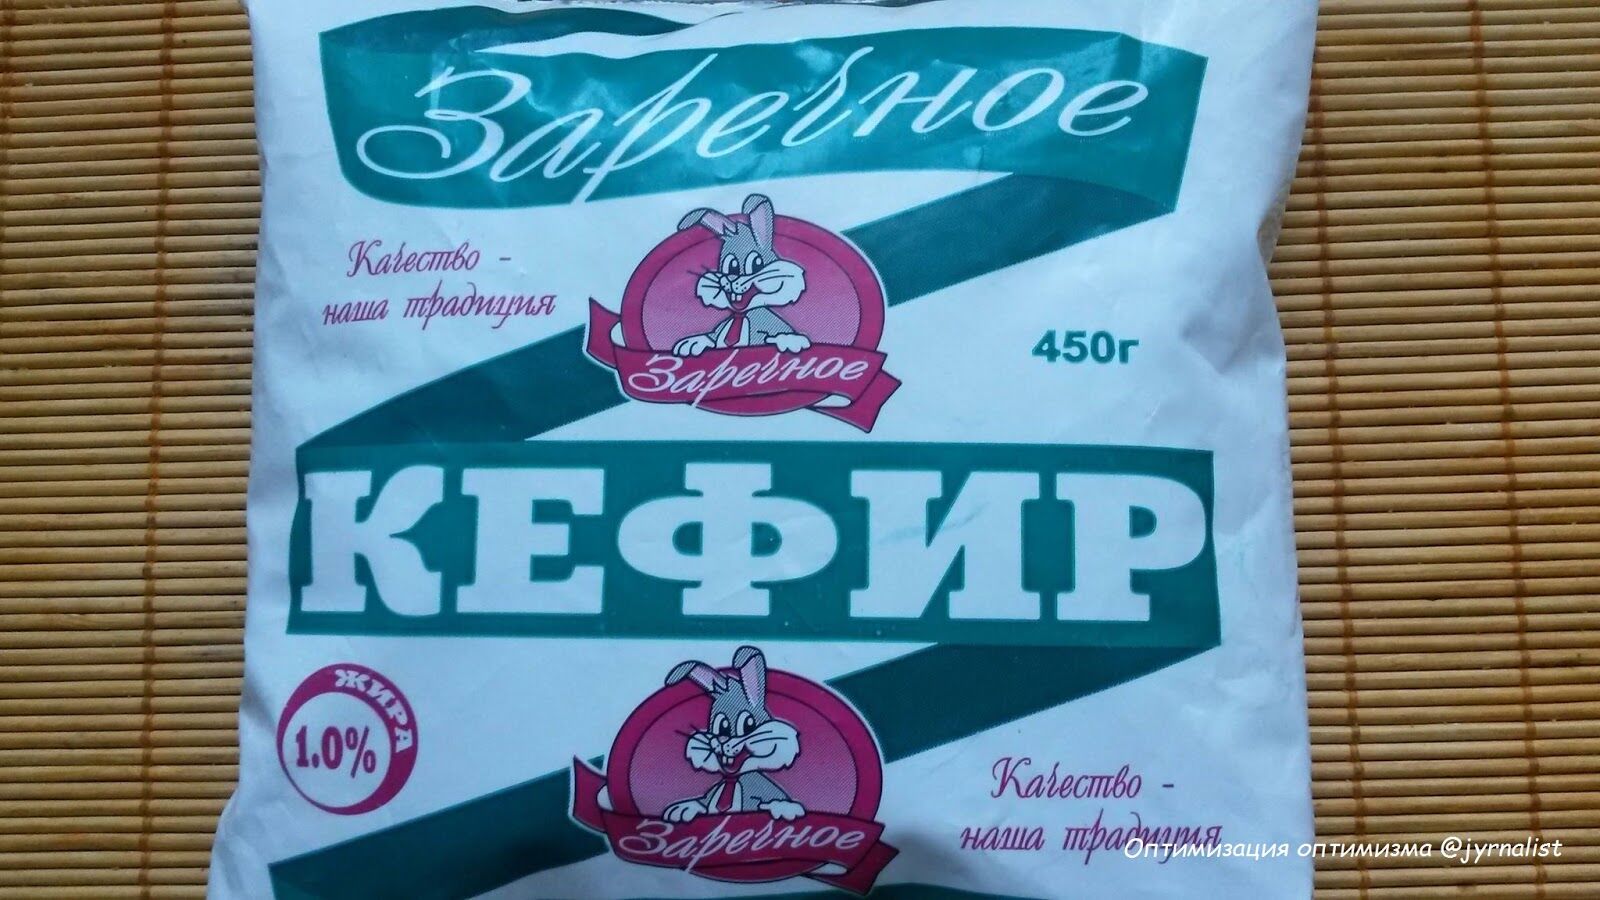 "Знайдіть 10 відмінностей": у Луганську зробили фейковий копію популярного продукту